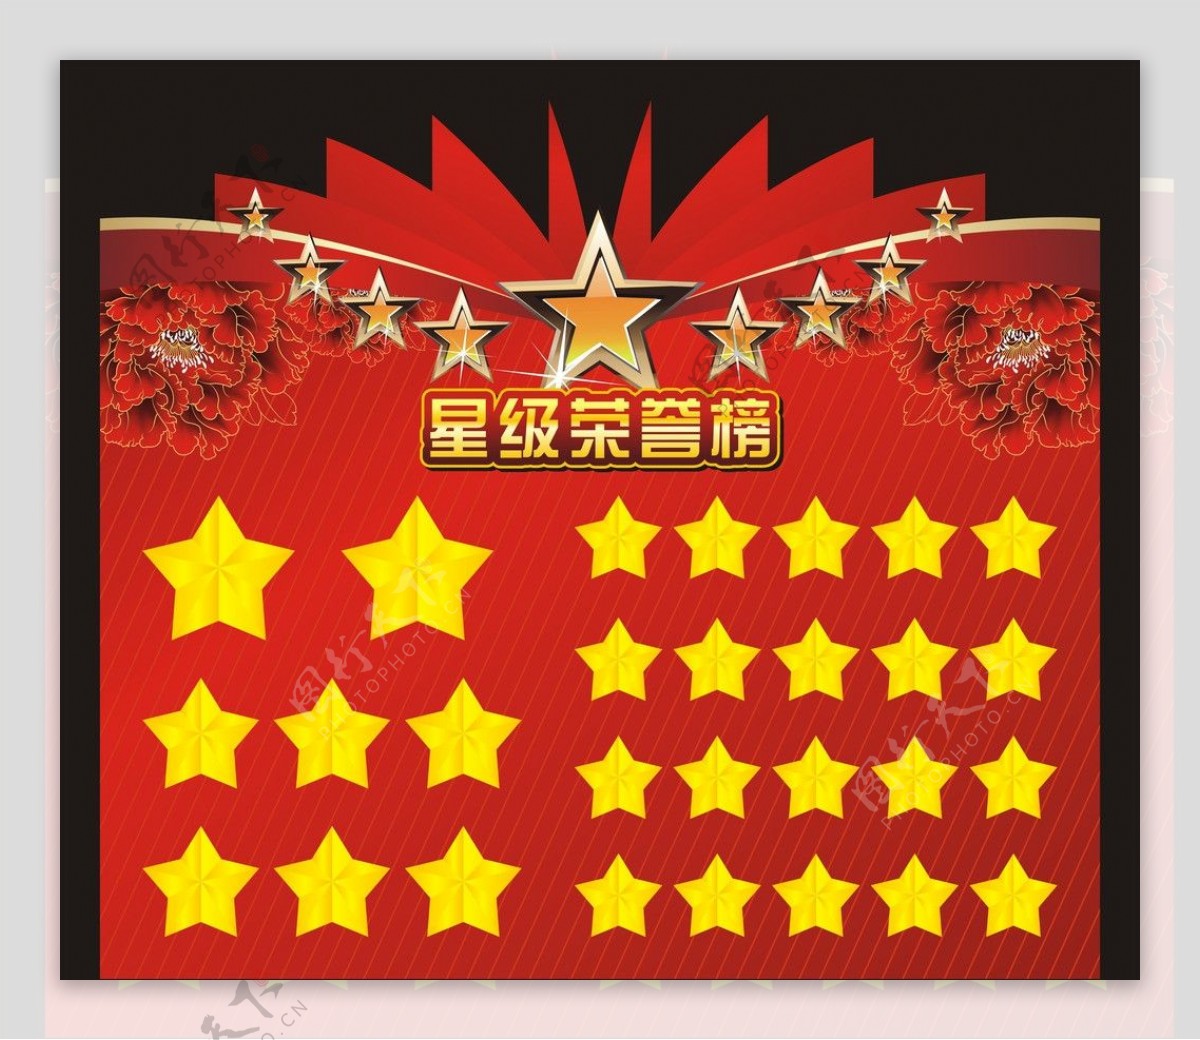 淘宝天猫五星好评返现代金券返现卡背面设计图片下载_红动中国